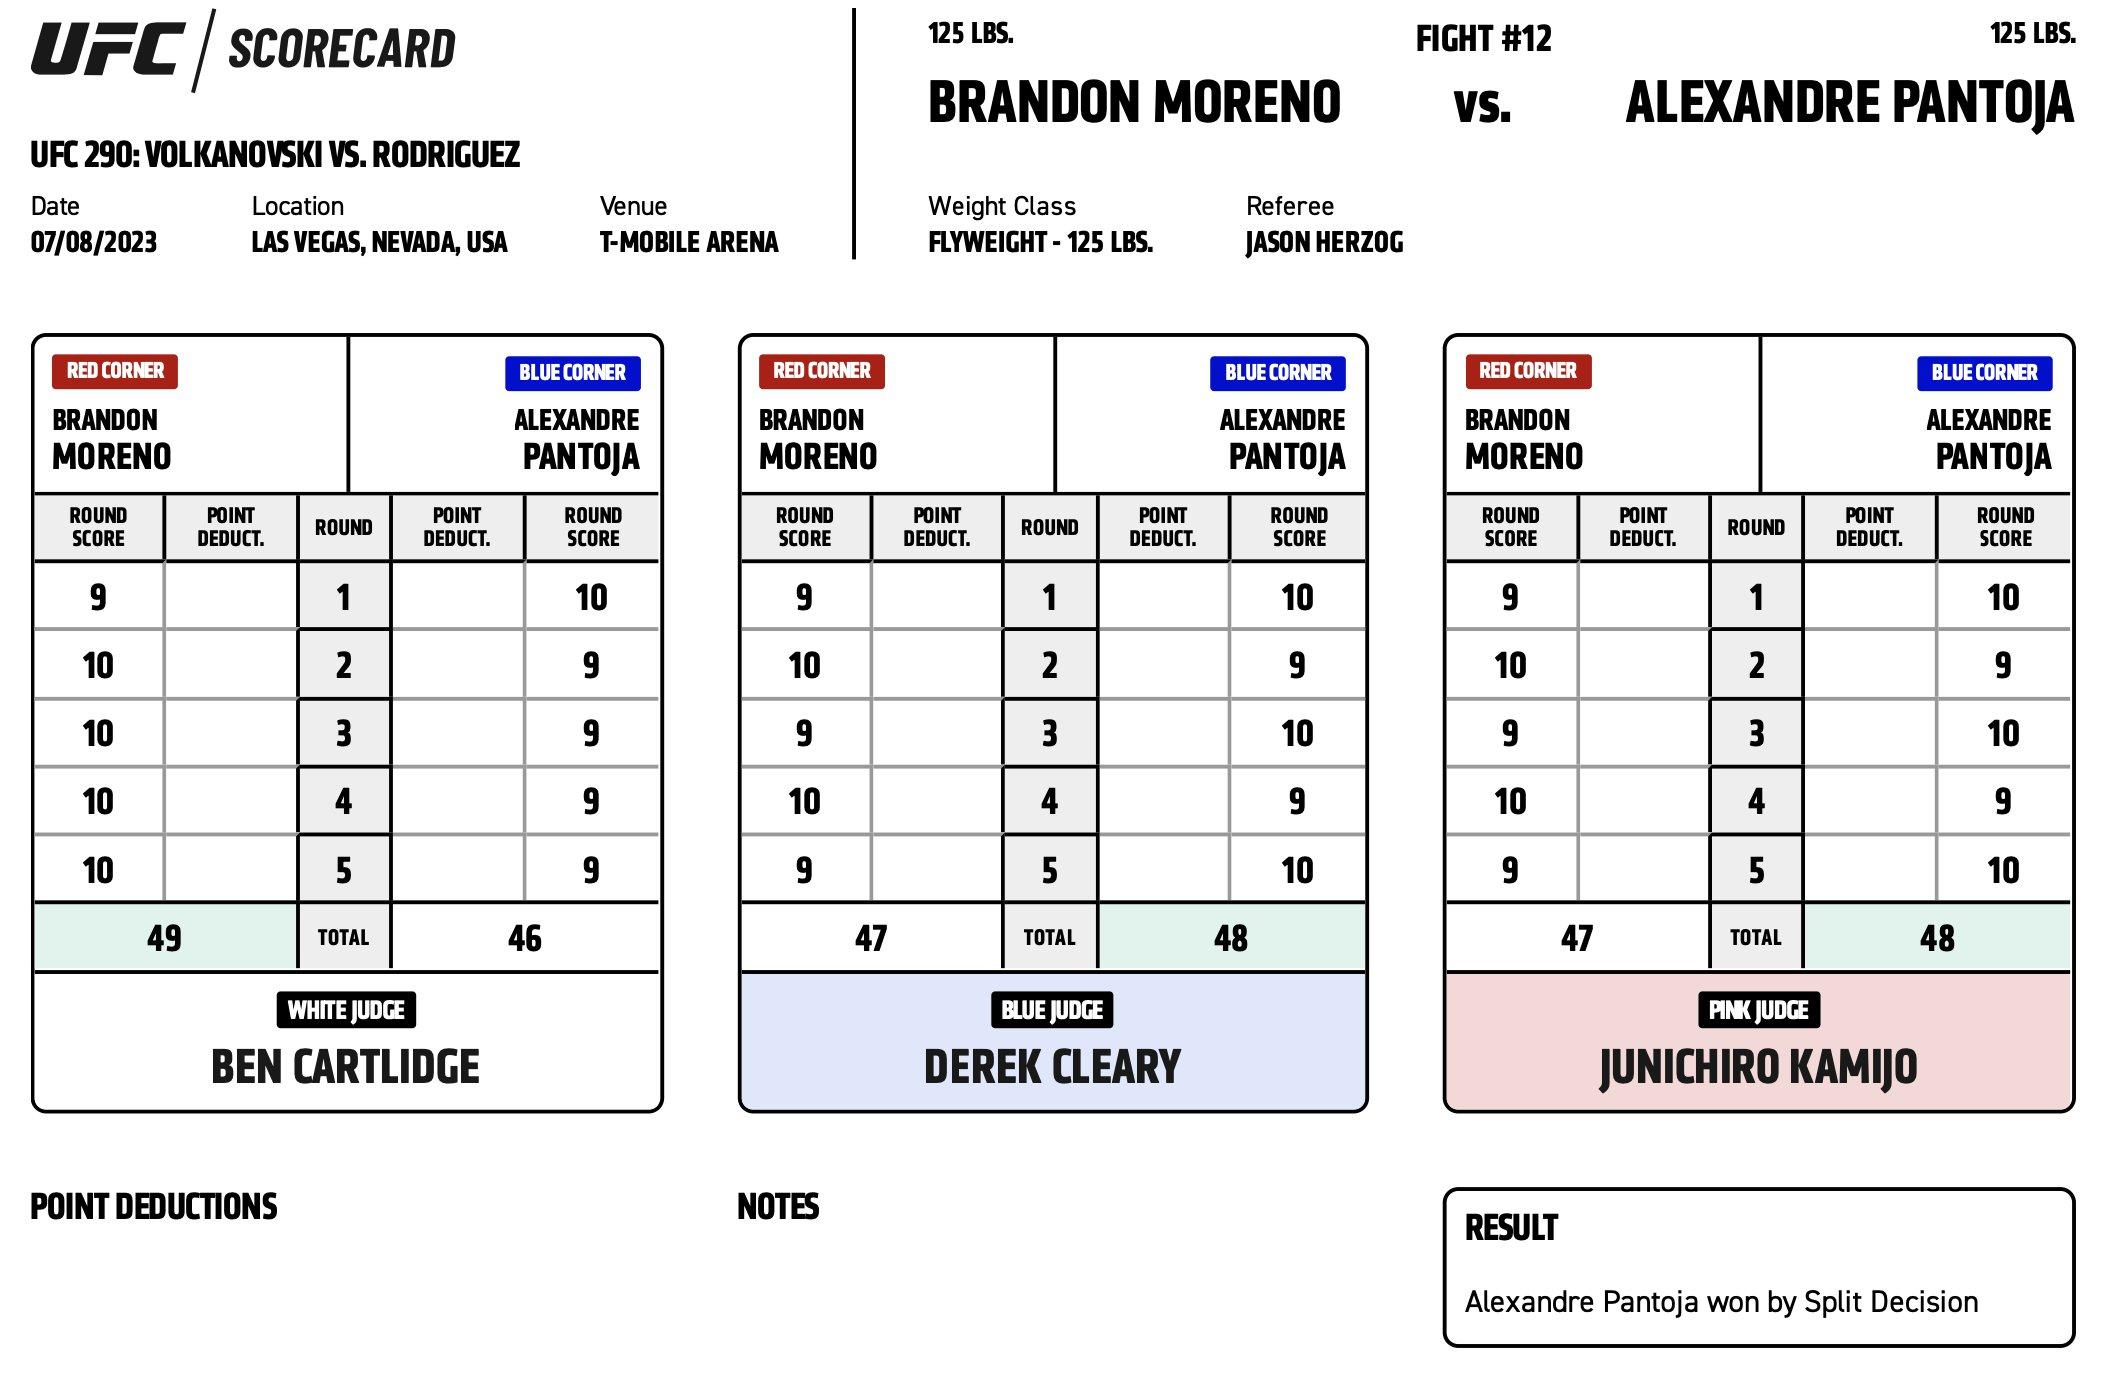 The Official Judges Scorecards for Brandon Moreno vs. Alexandre Pantoja 2